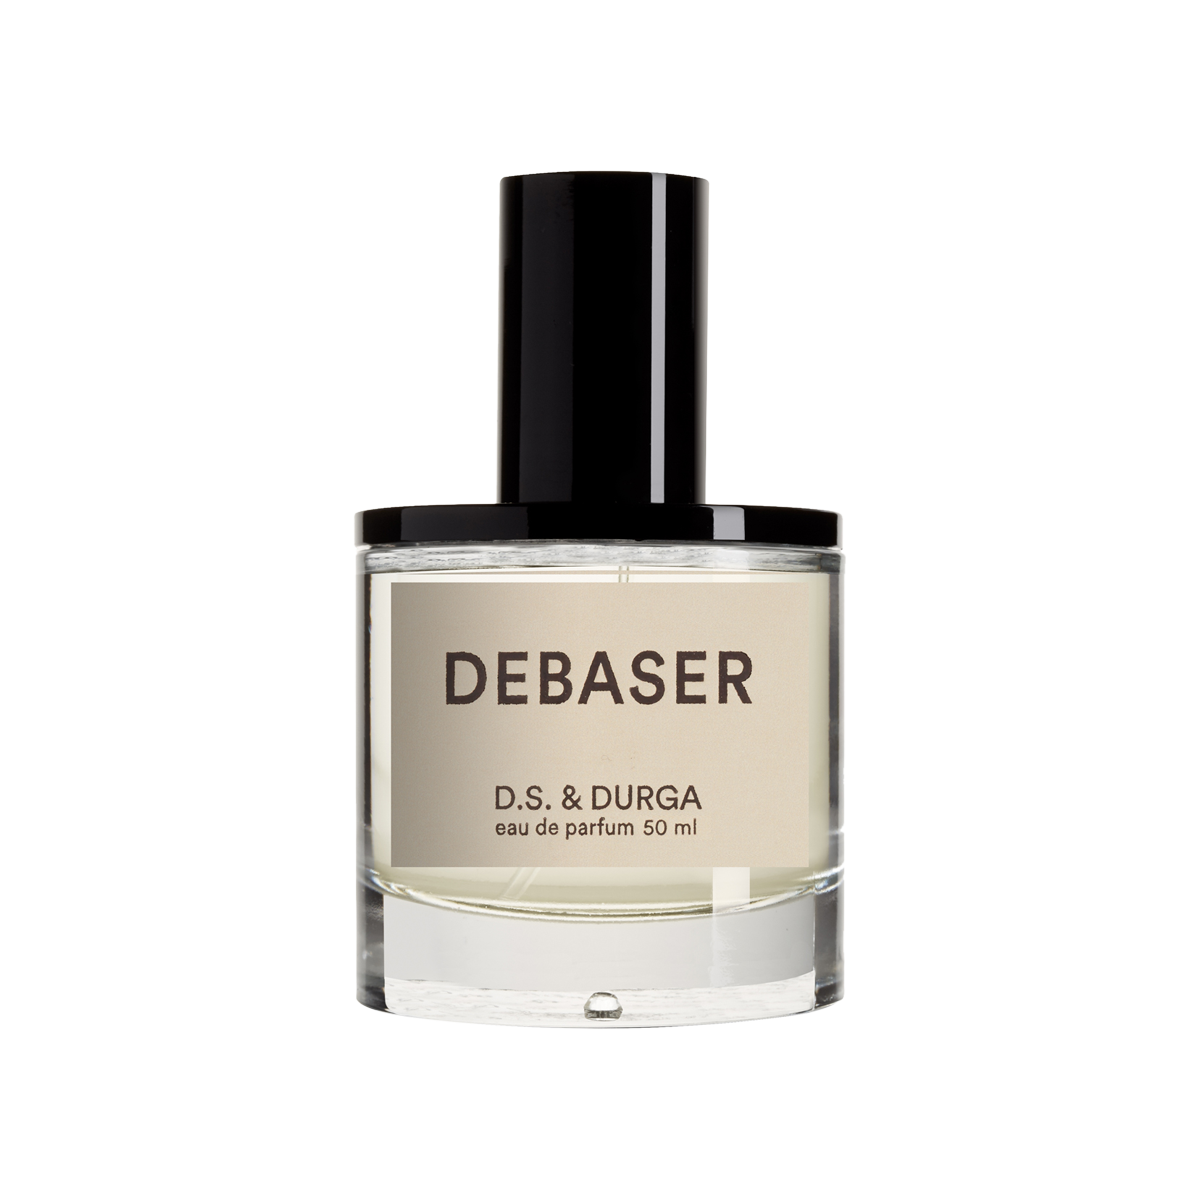 D.S. & DURGA - Debaser Eau de Parfum